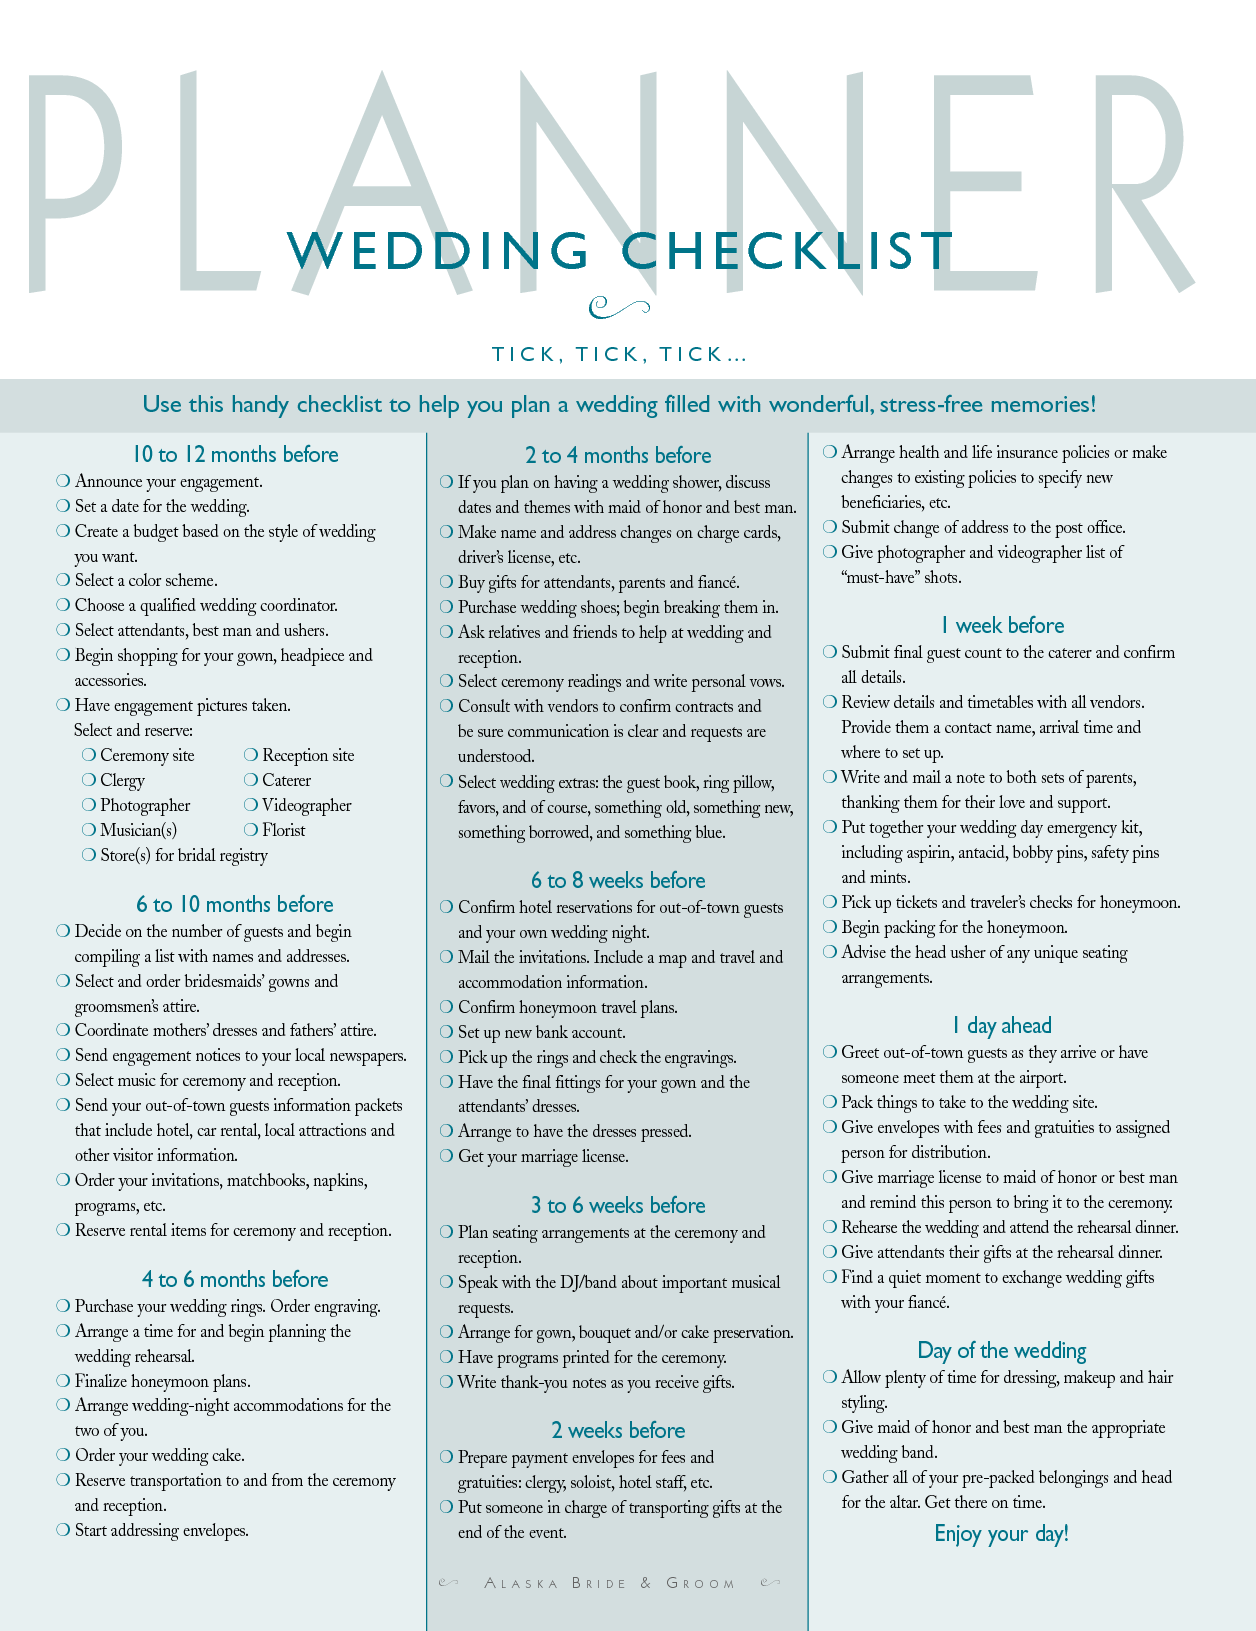 wedding-checklist-template-2-2